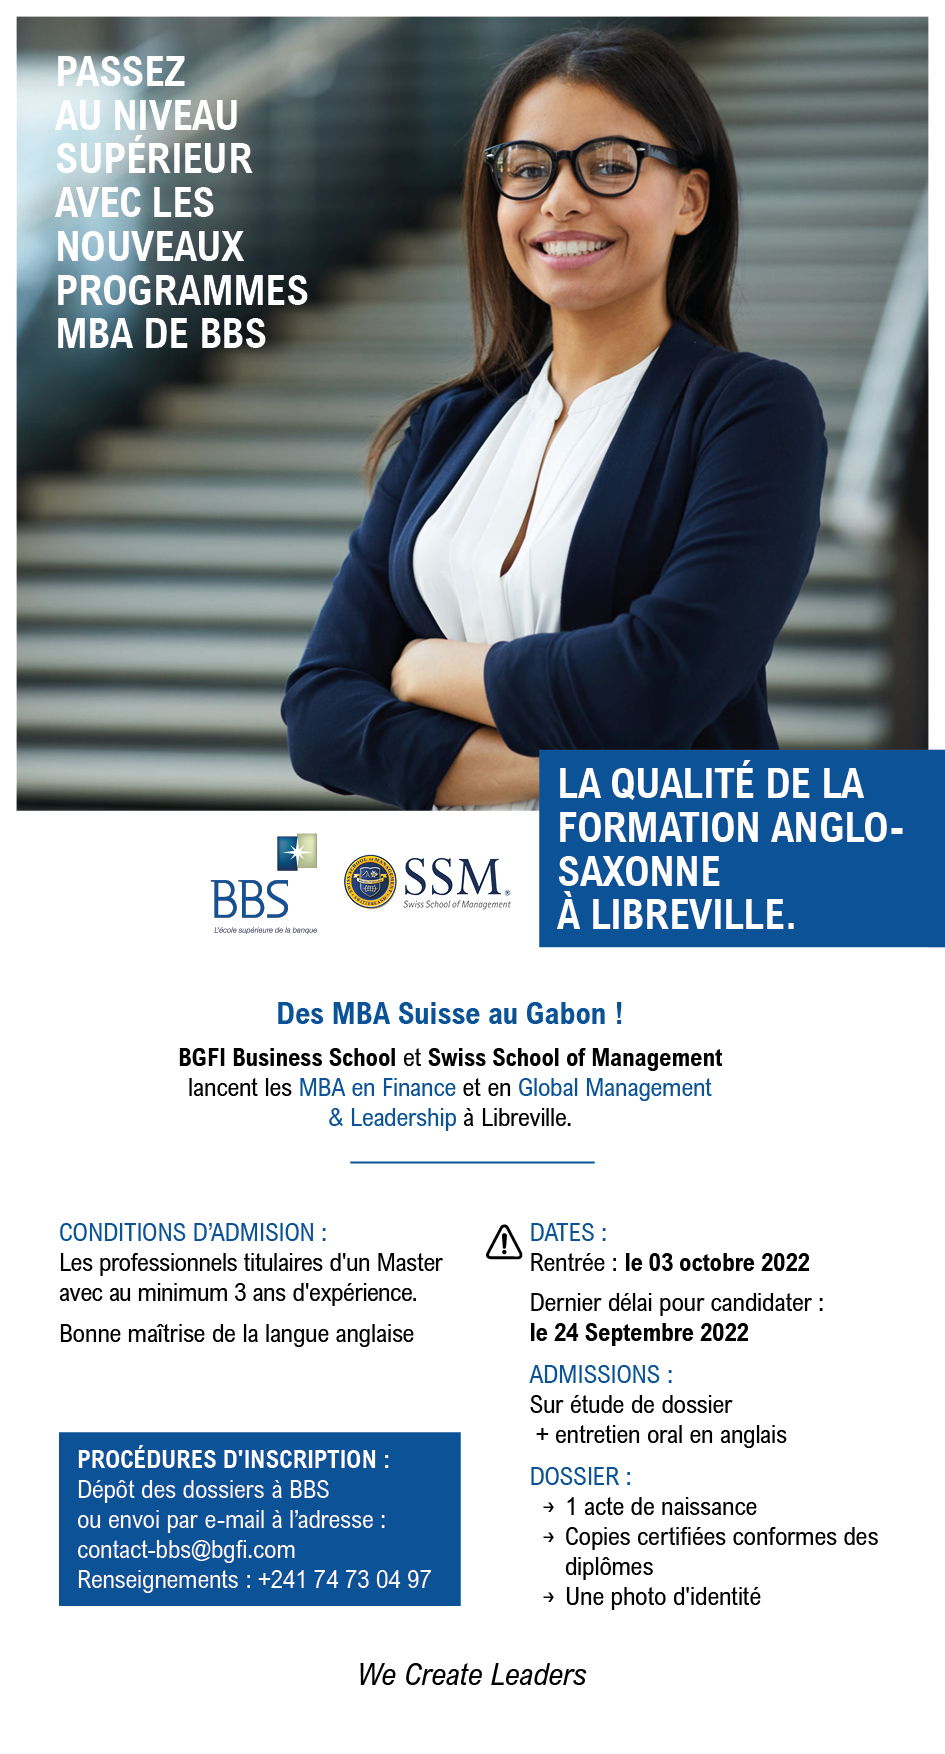 https://bbs-school.com/files/bbs_mba_suisse_rs_5827.jpg